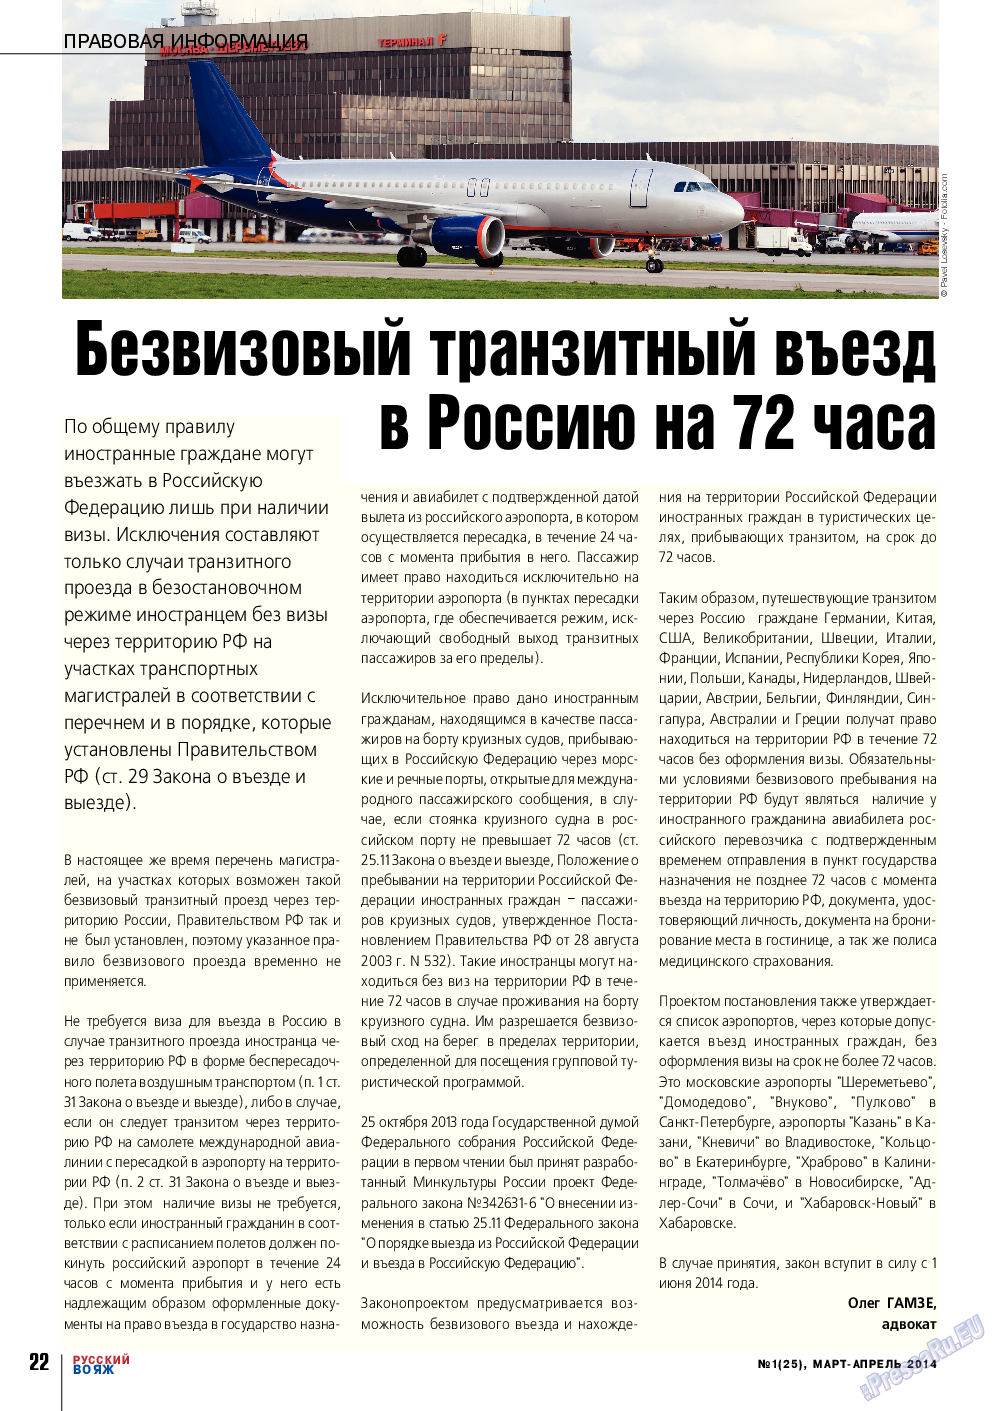 Русский вояж, журнал. 2014 №1 стр.22